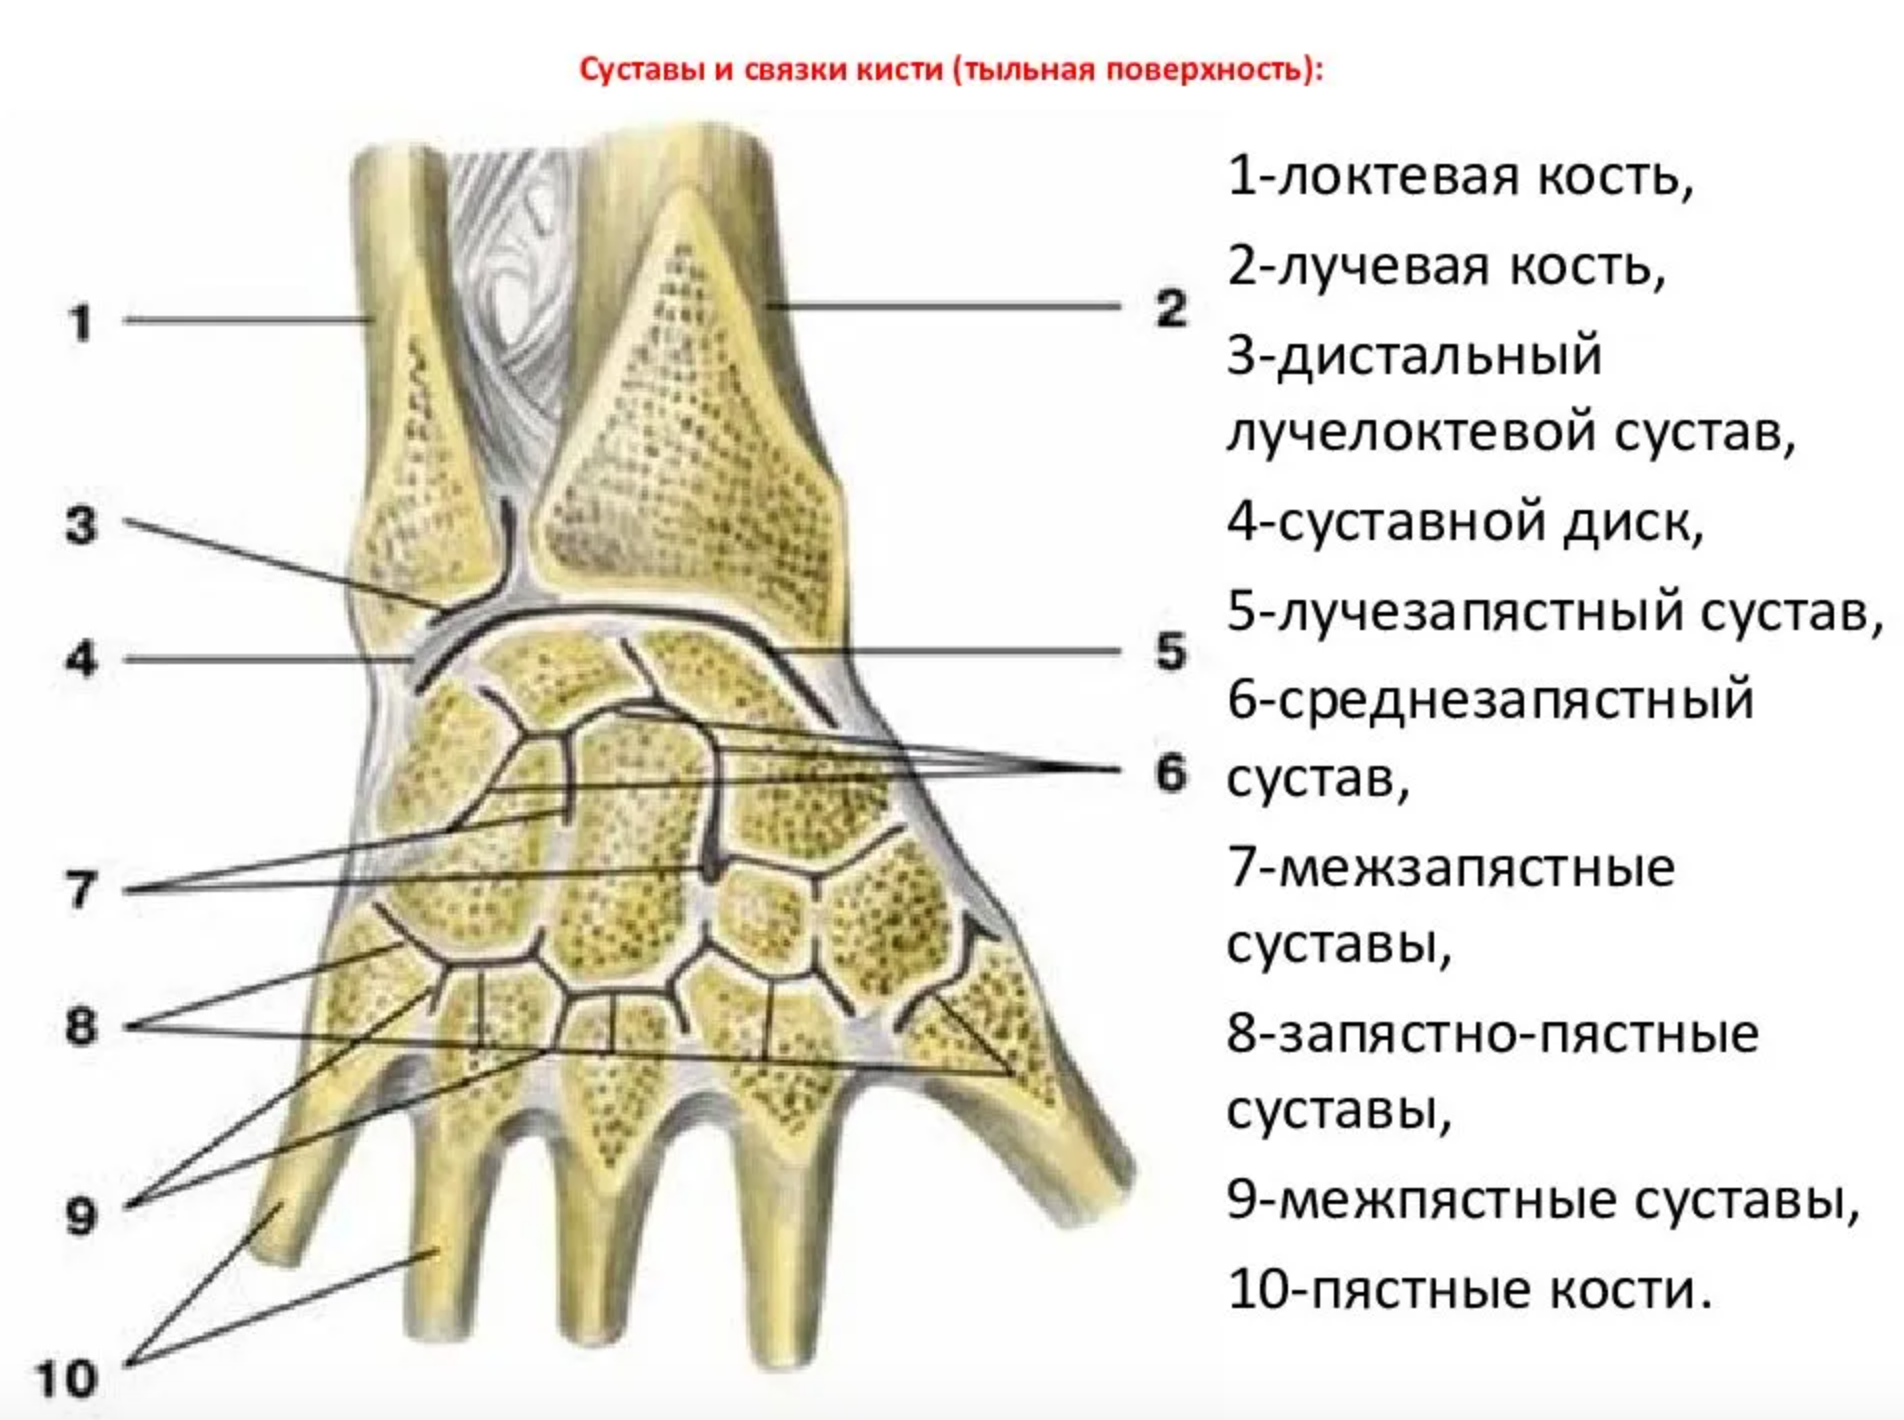 Соединения костей запястья. Суставной диск лучезапястного сустава. Дистальный лучелоктевой сустав анатомия связки. Среднезапястный сустав связки. Лучезапястный сустав анатомия суставные поверхности.